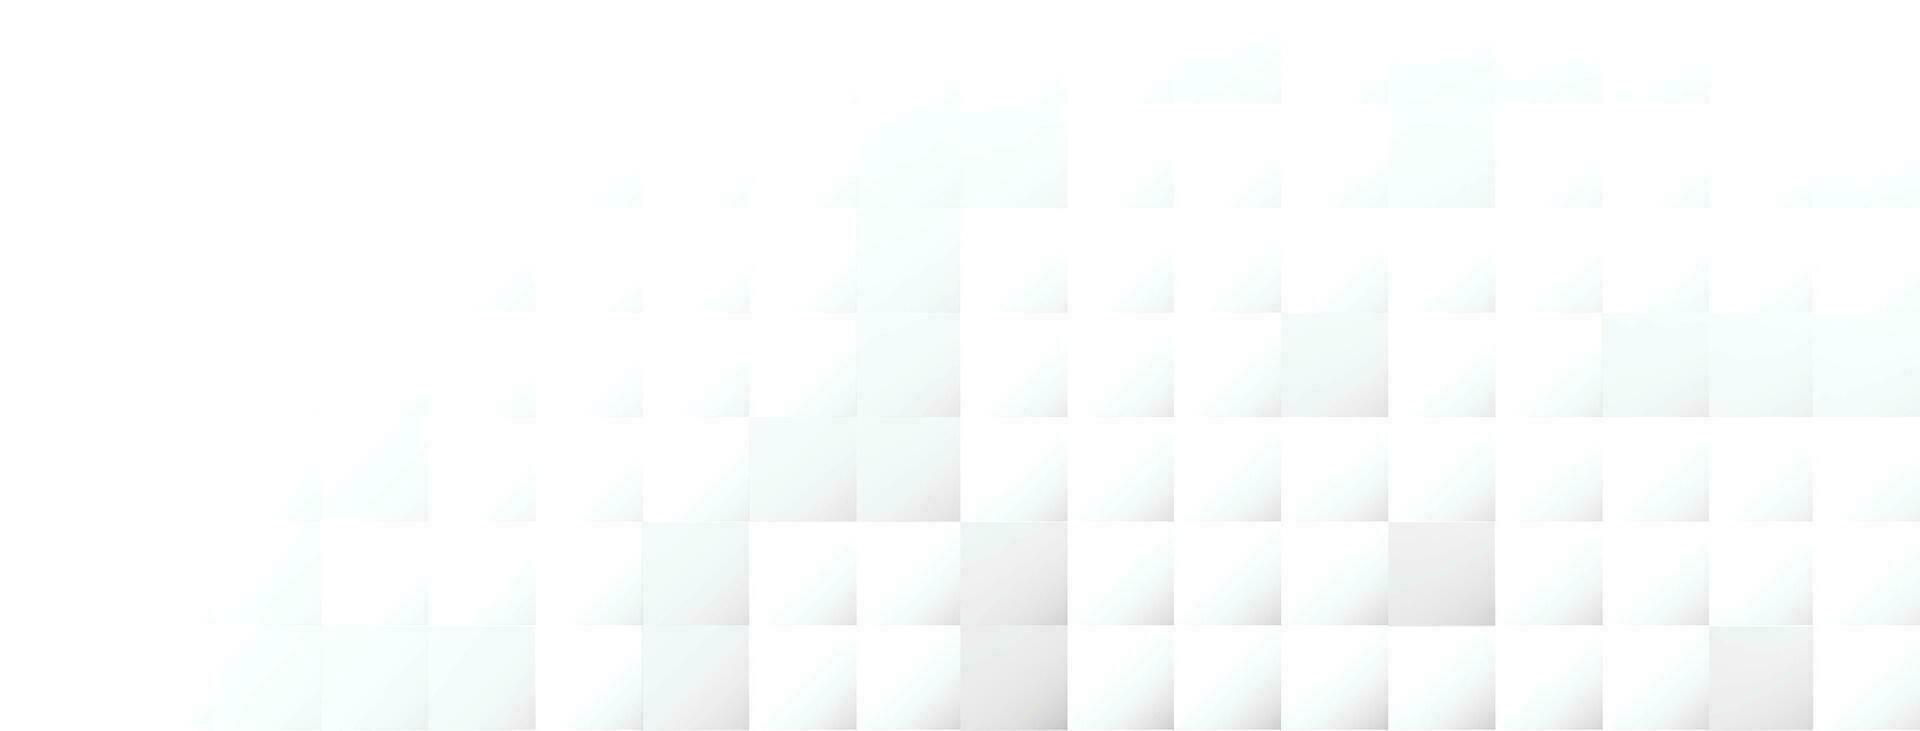 abstrakt modern fyrkantig bakgrund. vit och grå geometrisk struktur. vektorillustration vektor